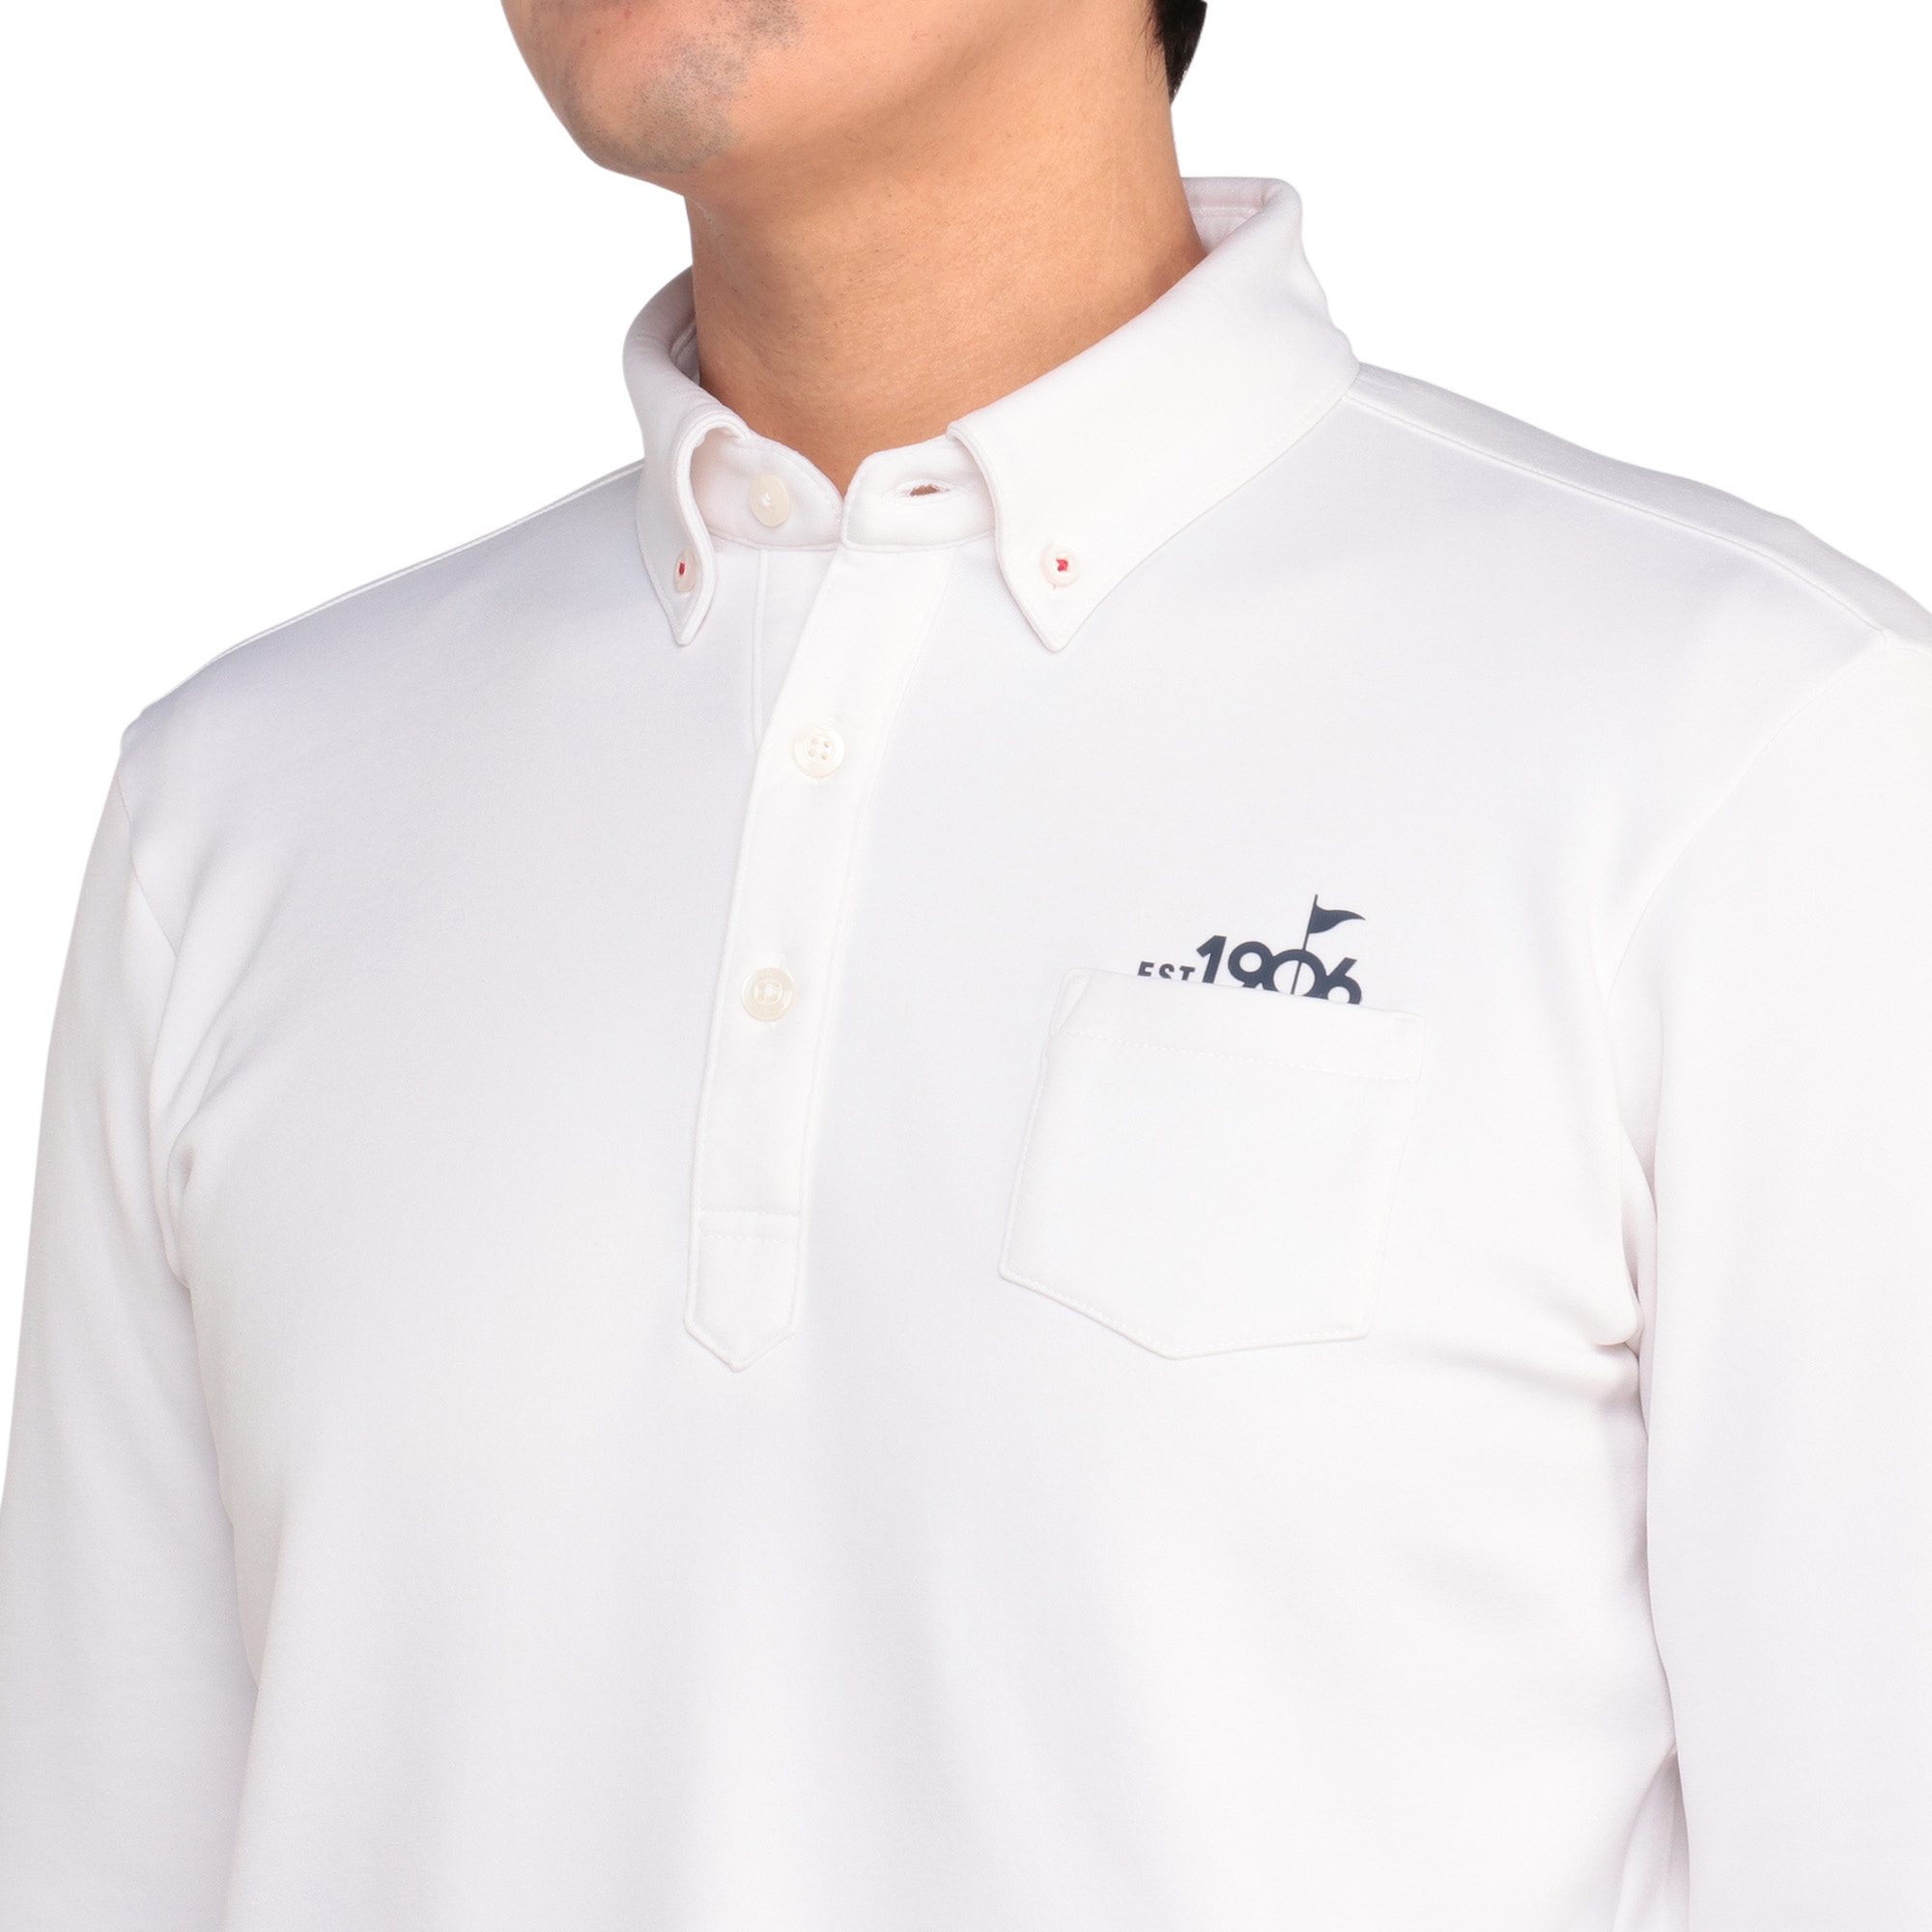 発熱素材】ブレスサーモポロシャツ(長袖)[メンズ]|E2MAA527|長袖シャツ